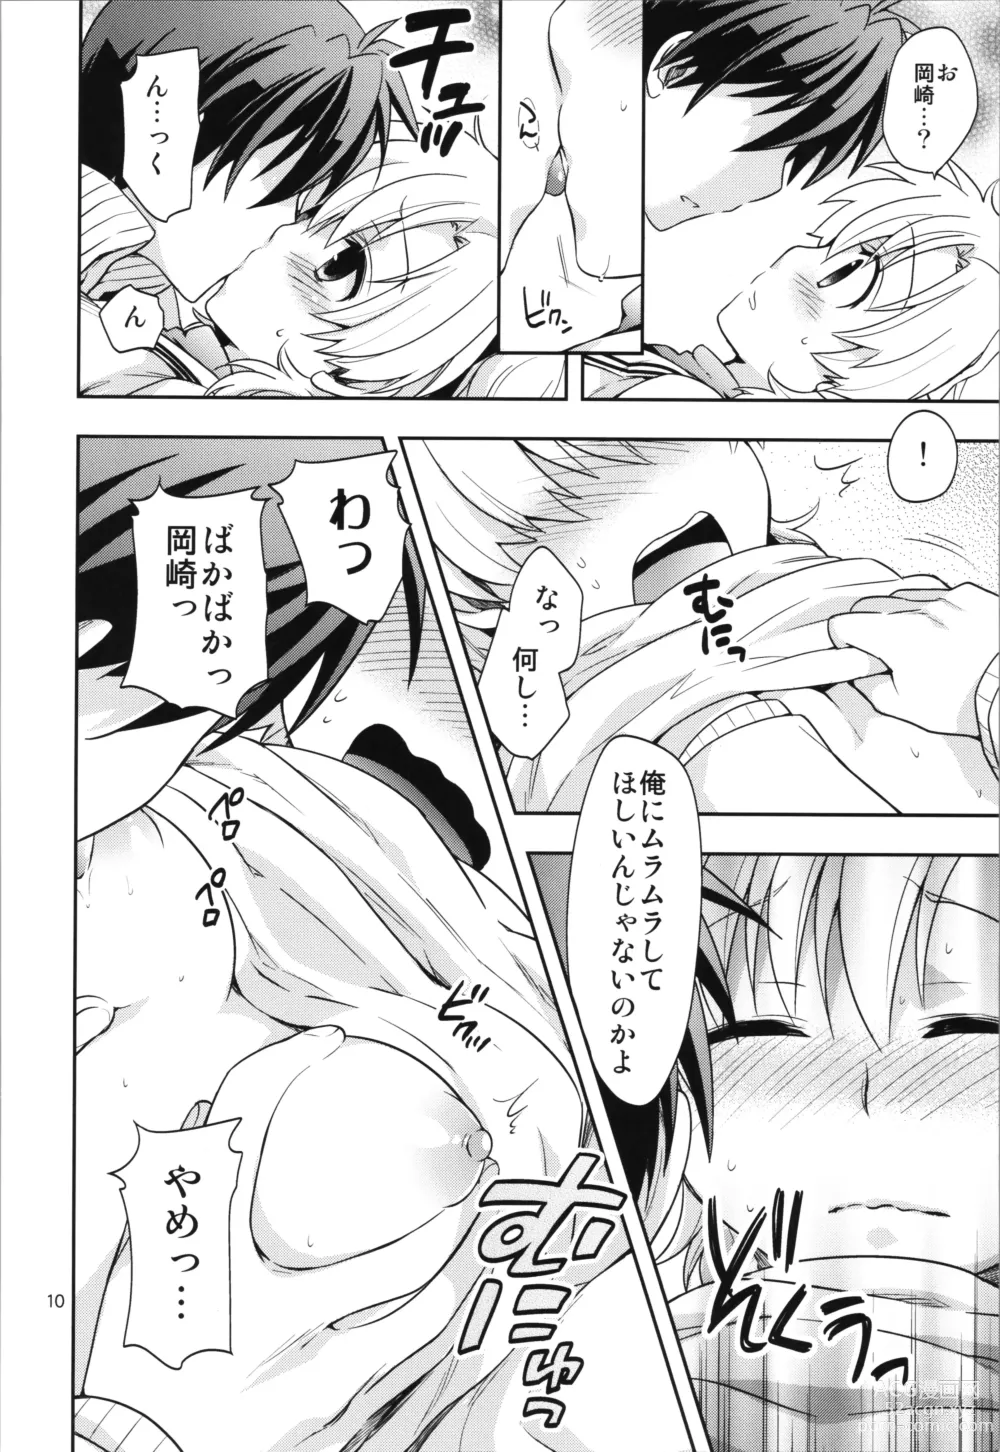 Page 10 of doujinshi Ura Haruhara Mania